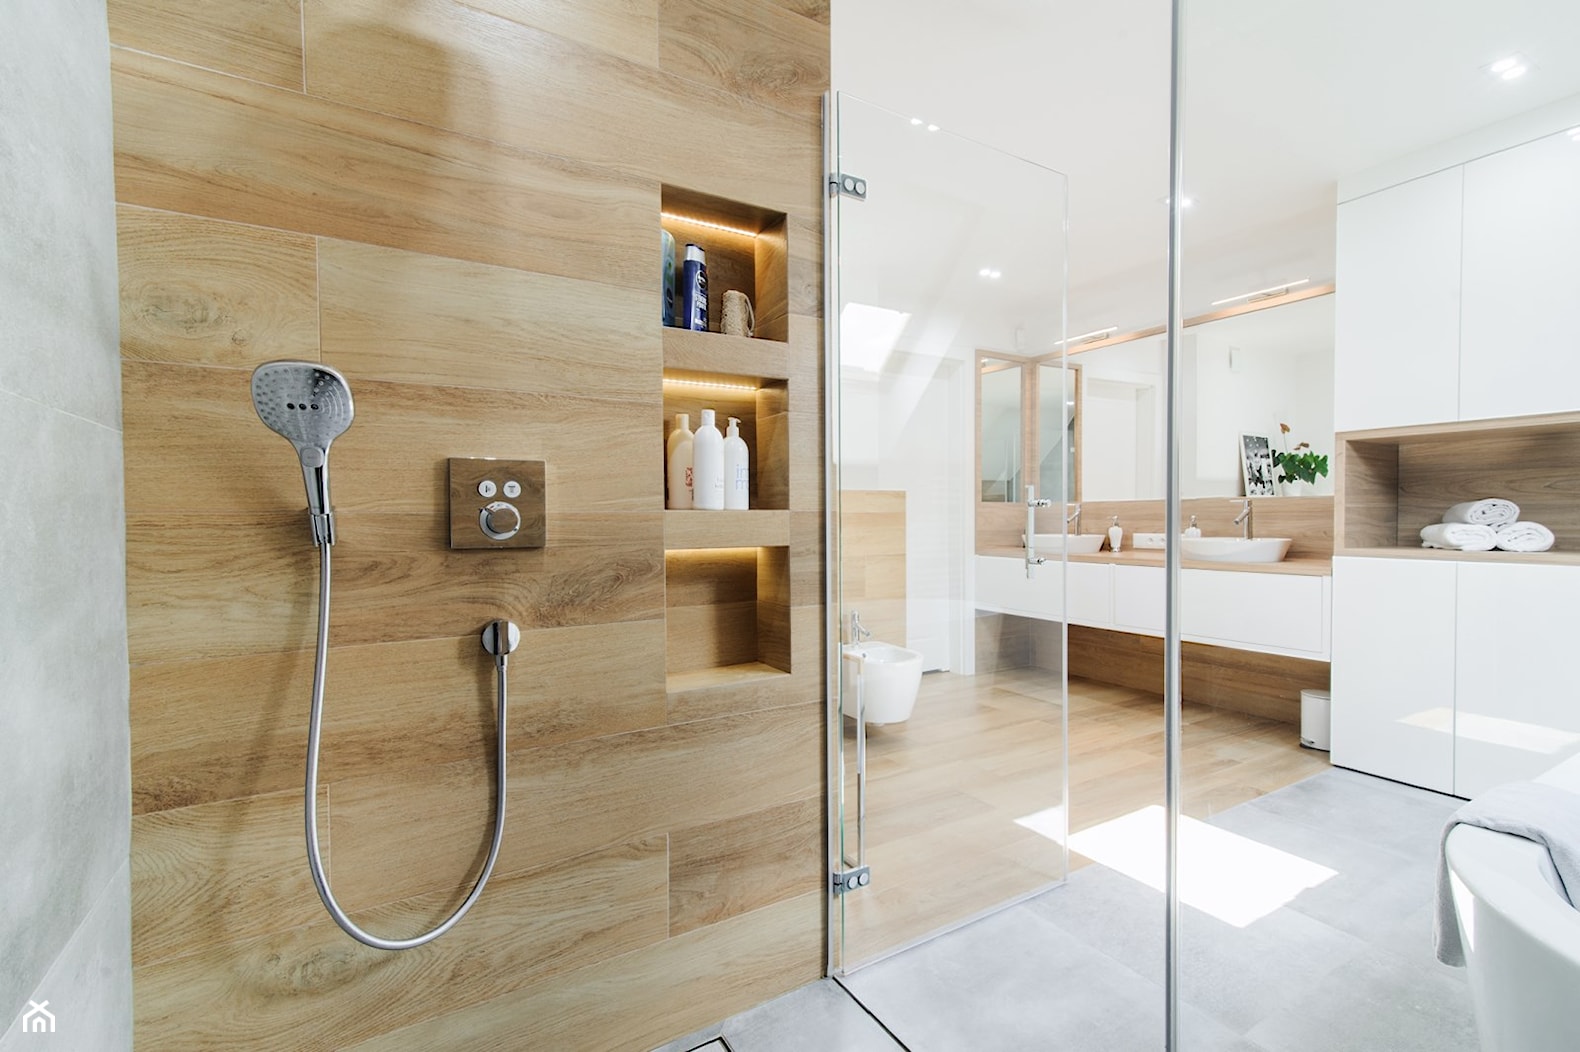 Duża łazienka na poddaszu, połączenie ciepłego koloru drewna, bieli i chłodnego betonu - zdjęcie od pf design - Homebook